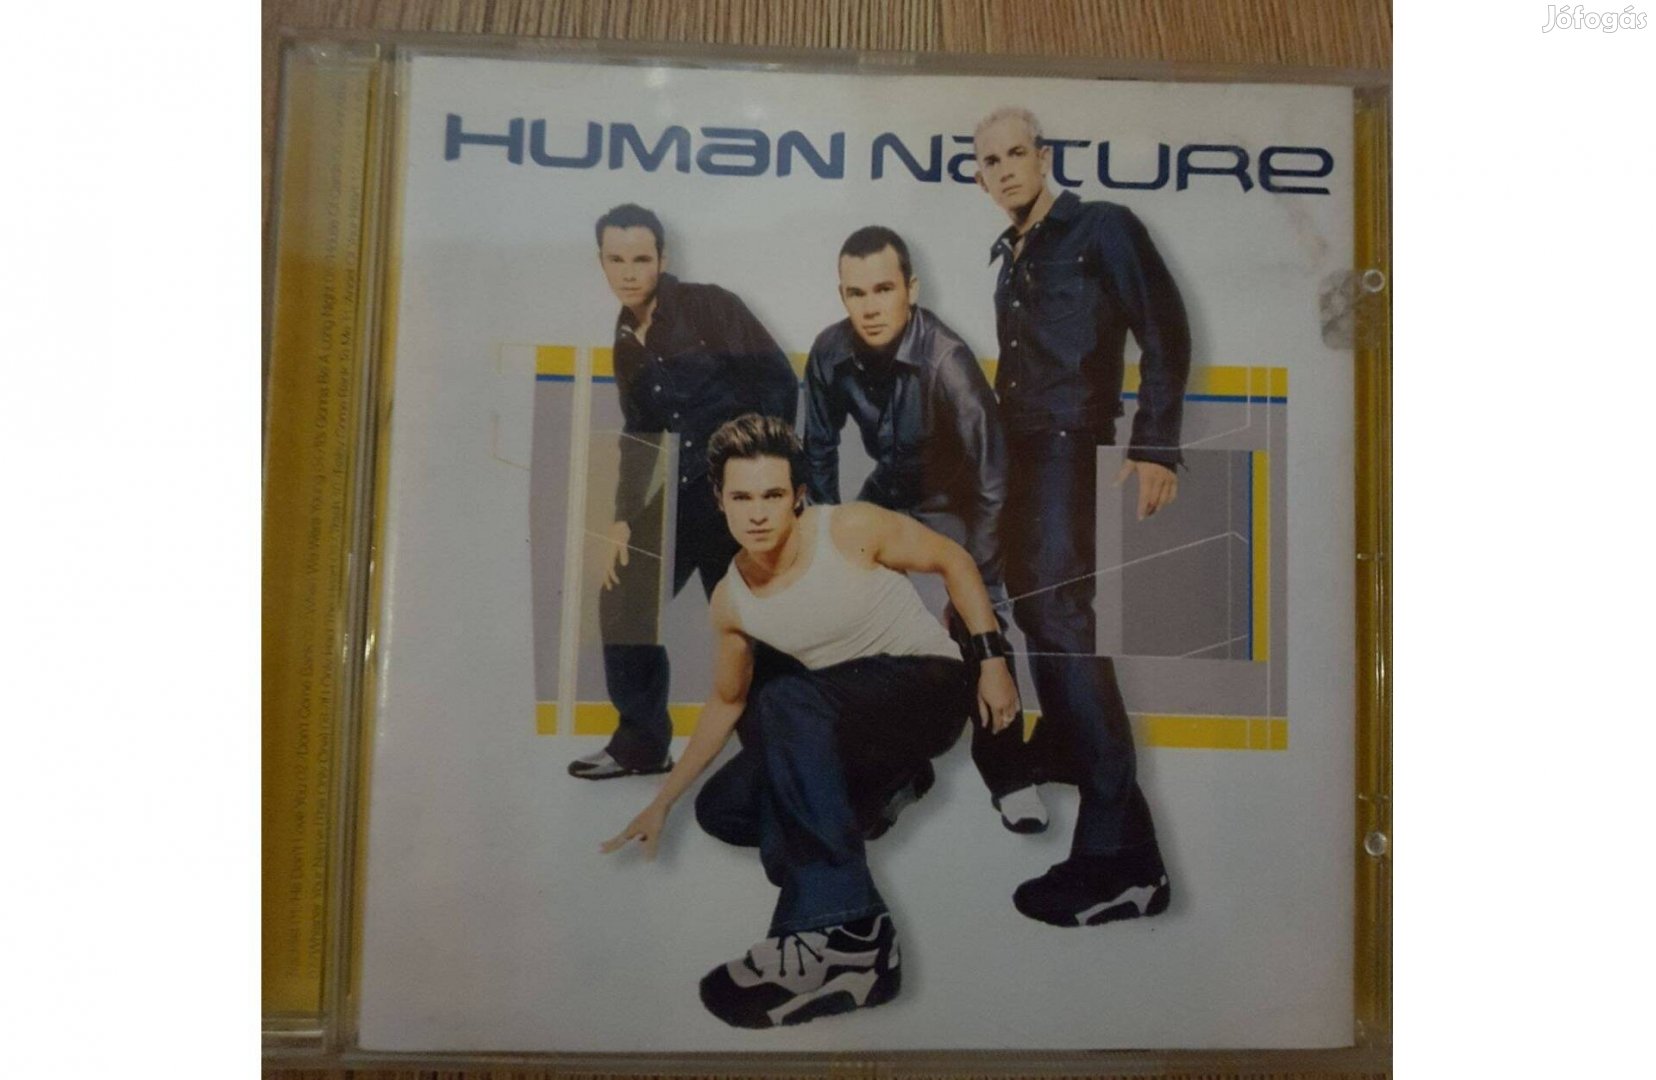 Human Nature - Human Nature CD